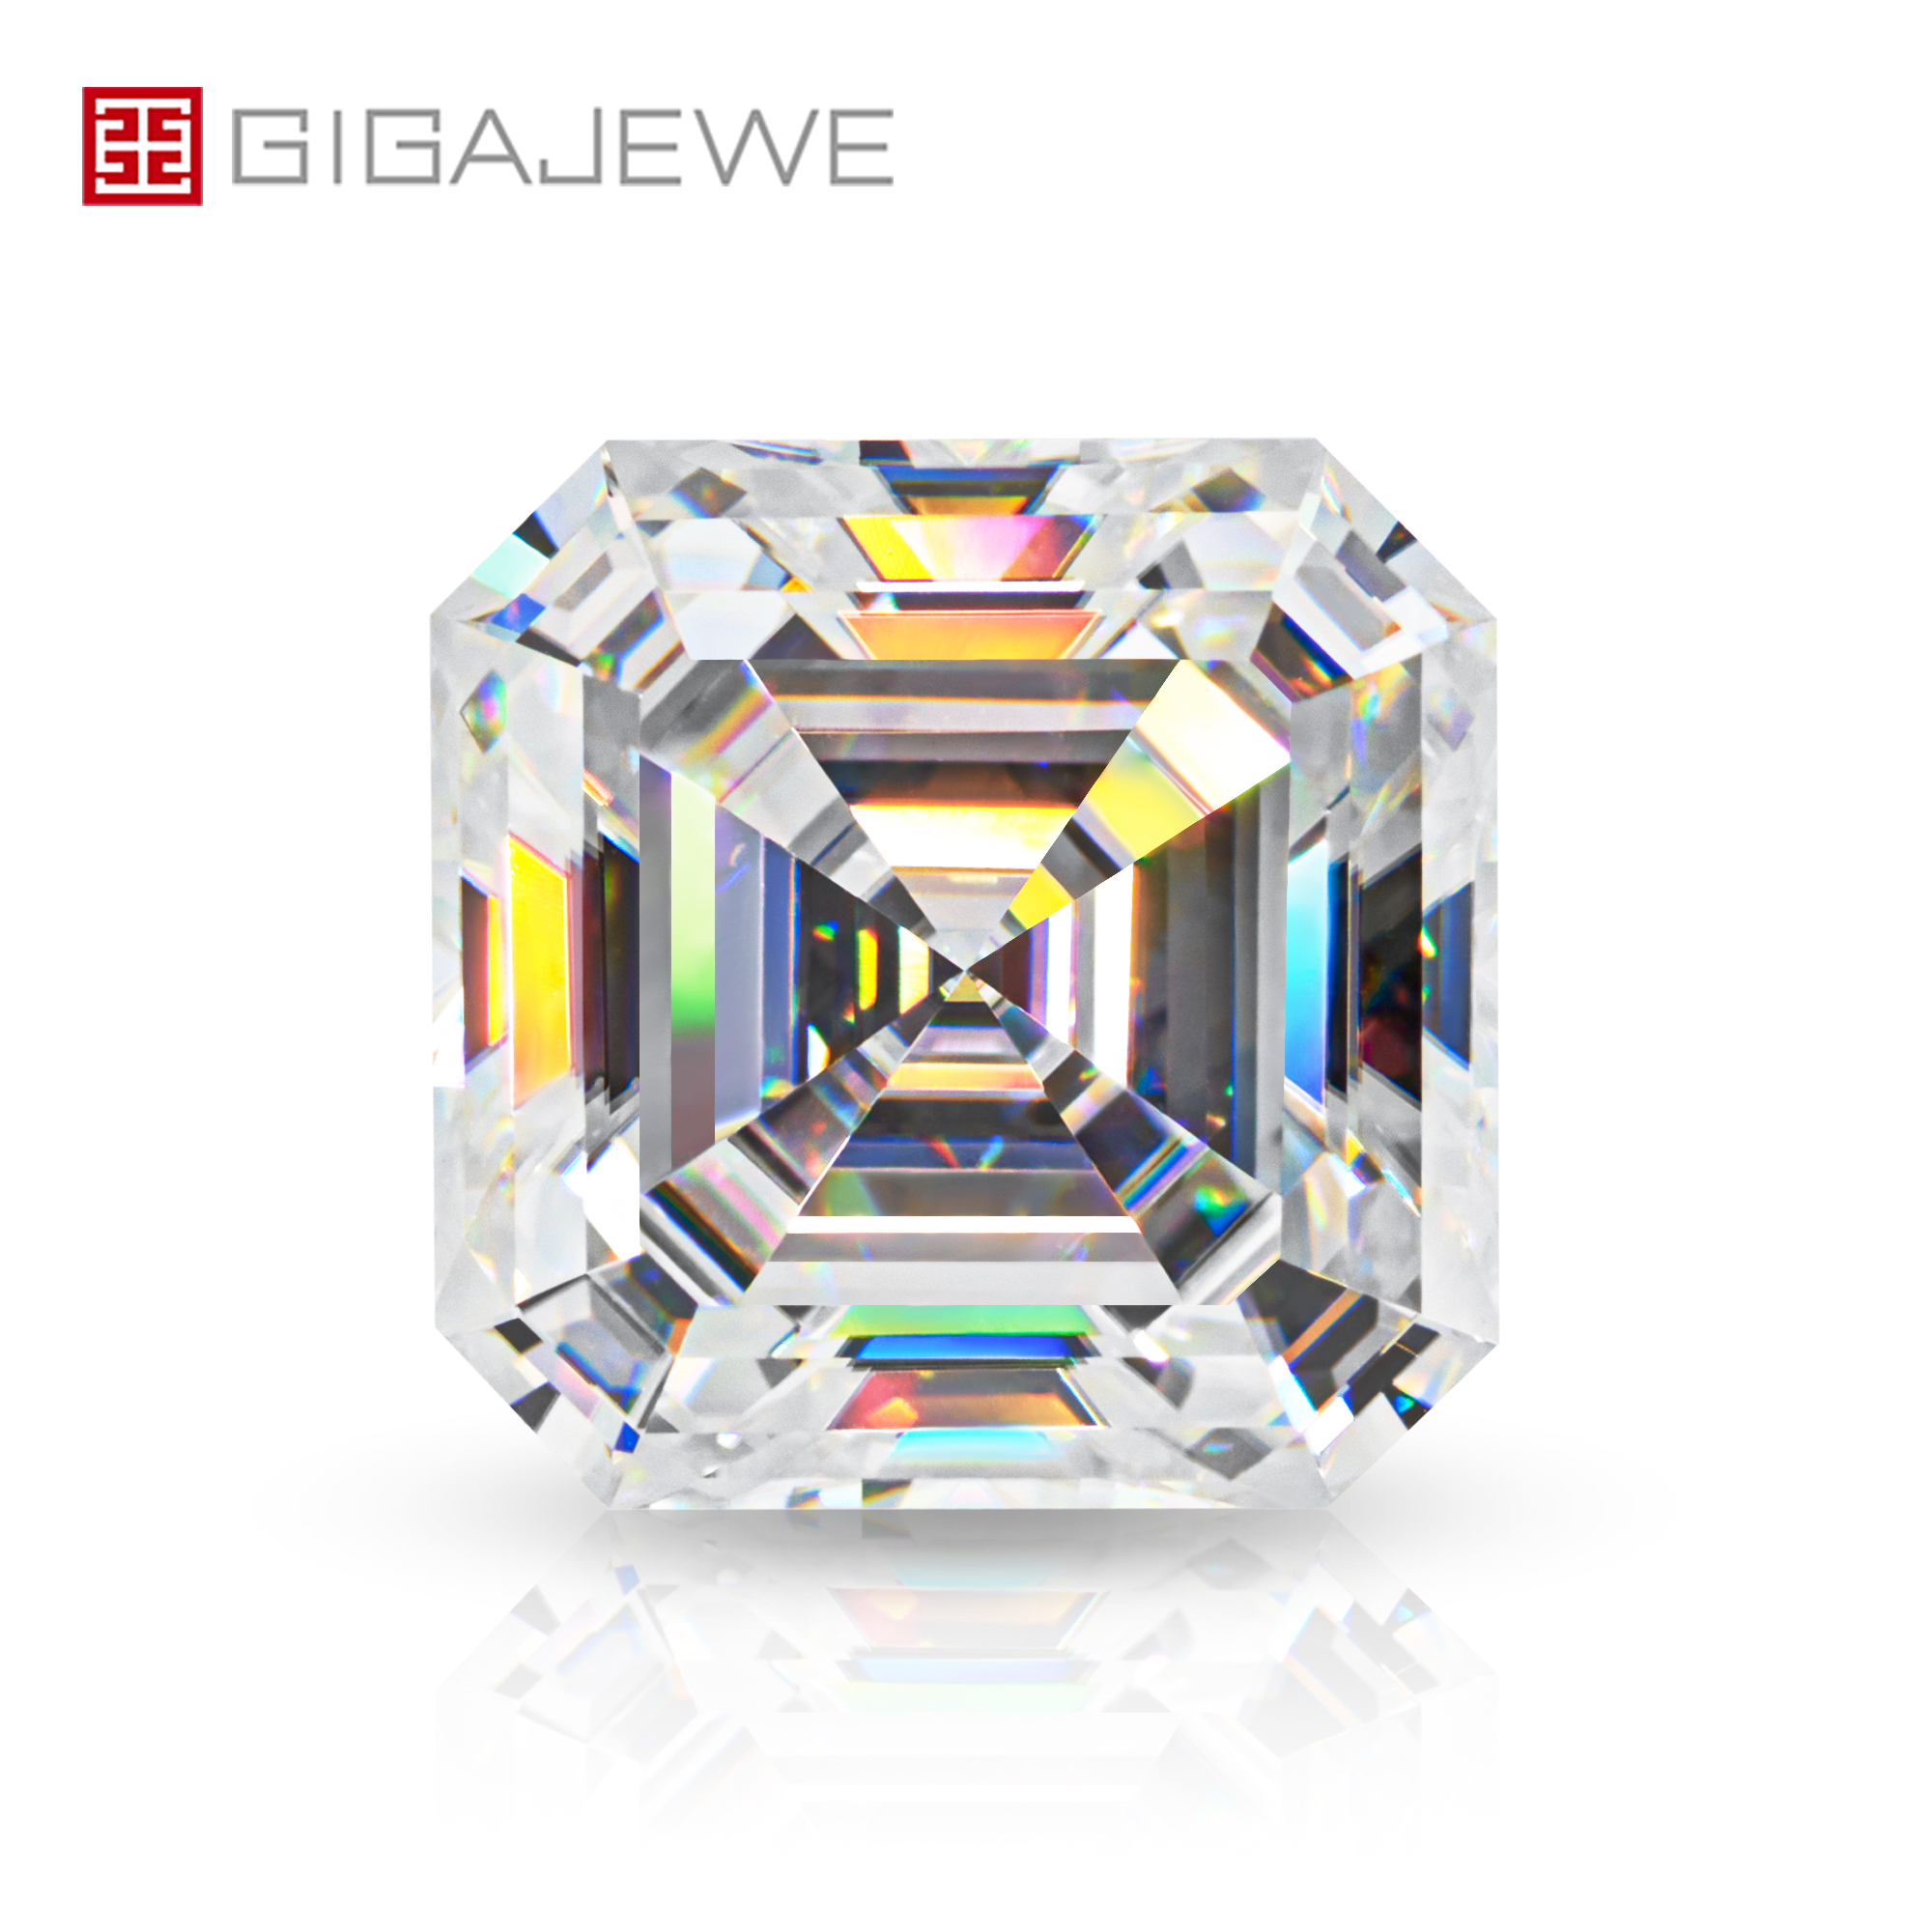 GIGAJEWE Witte D Kleur Asscher cut VVS1 moissanite diamant 0.5-7ct voor sieraden maken handmatige cut